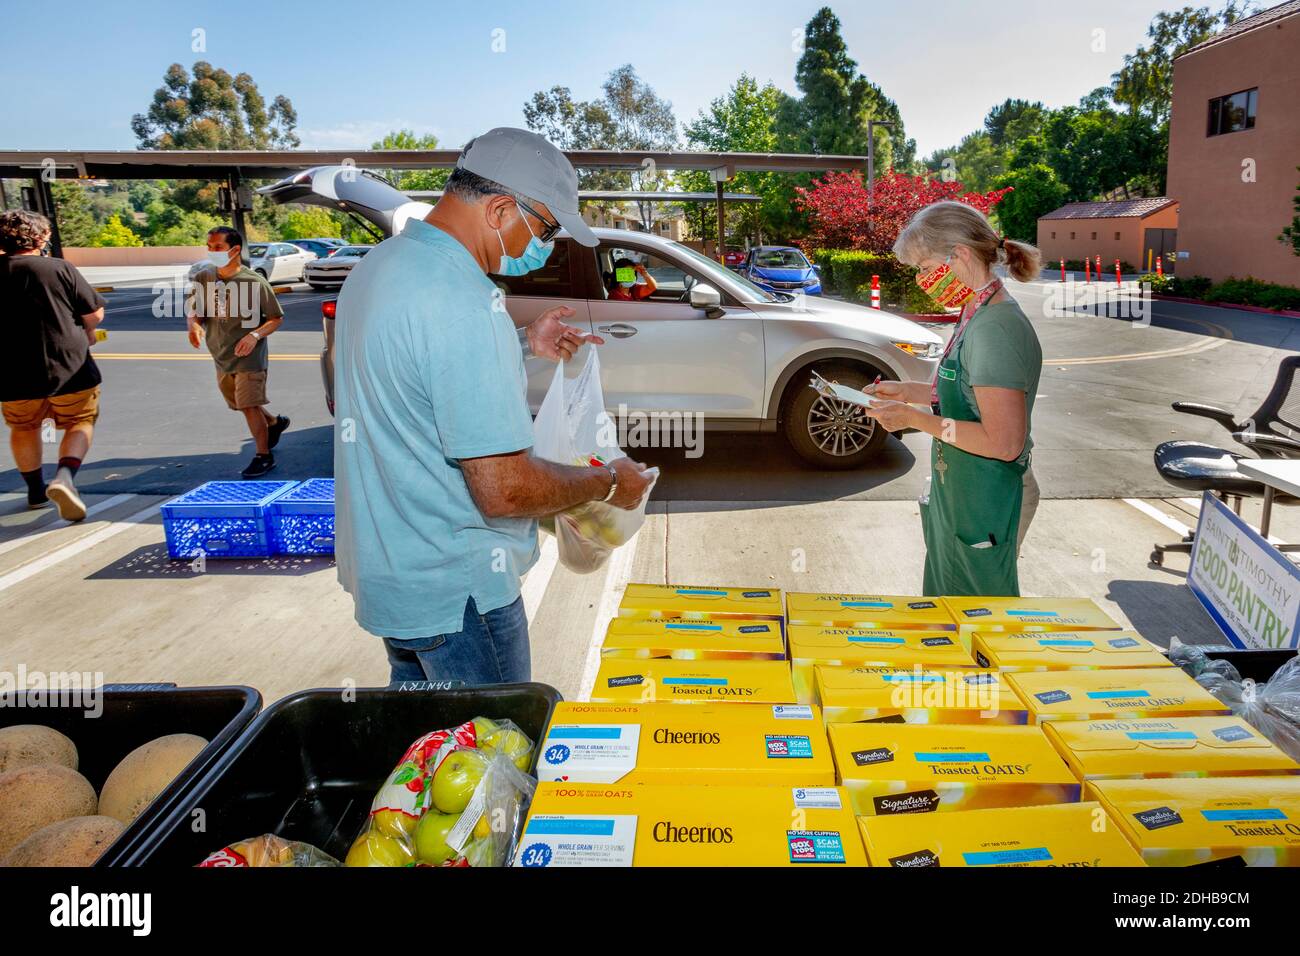 Una despensa de alimentos de caridad en una iglesia católica del sur de California suministra alimentos a las personas necesitadas que utilizan la campaña a través de la distribución. Nota máscaras debido a la pandemia del coronavirus. Foto de stock